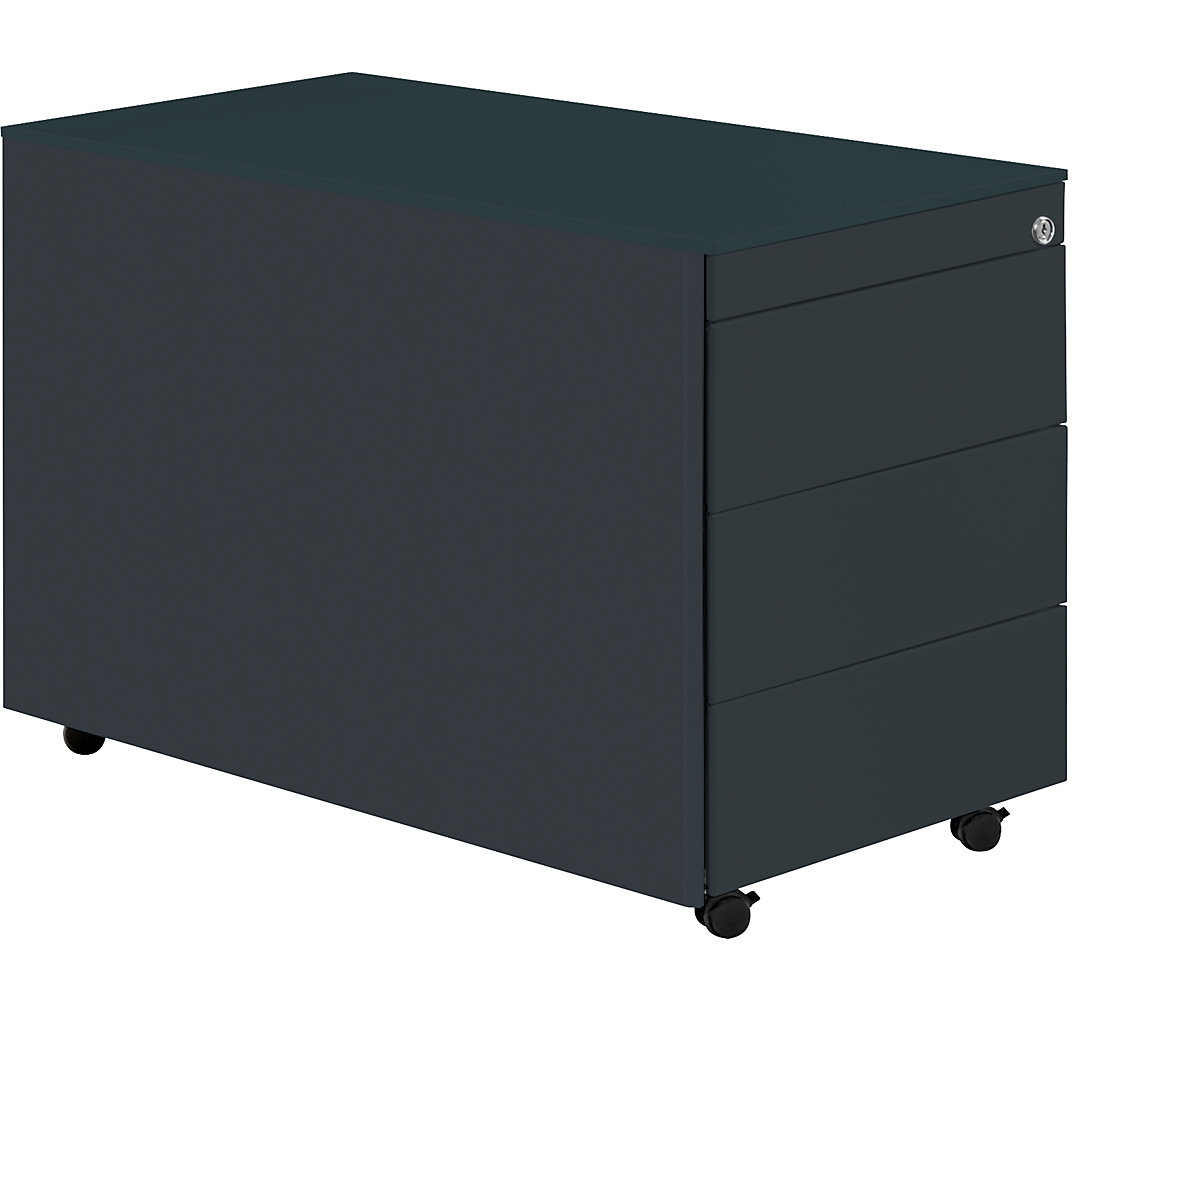 Zásuvkový kontajner s kolieskami – mauser, v x h 570 x 800 mm, oceľová doska, 3 zásuvky, antracitová / antracitová / antracitová-15